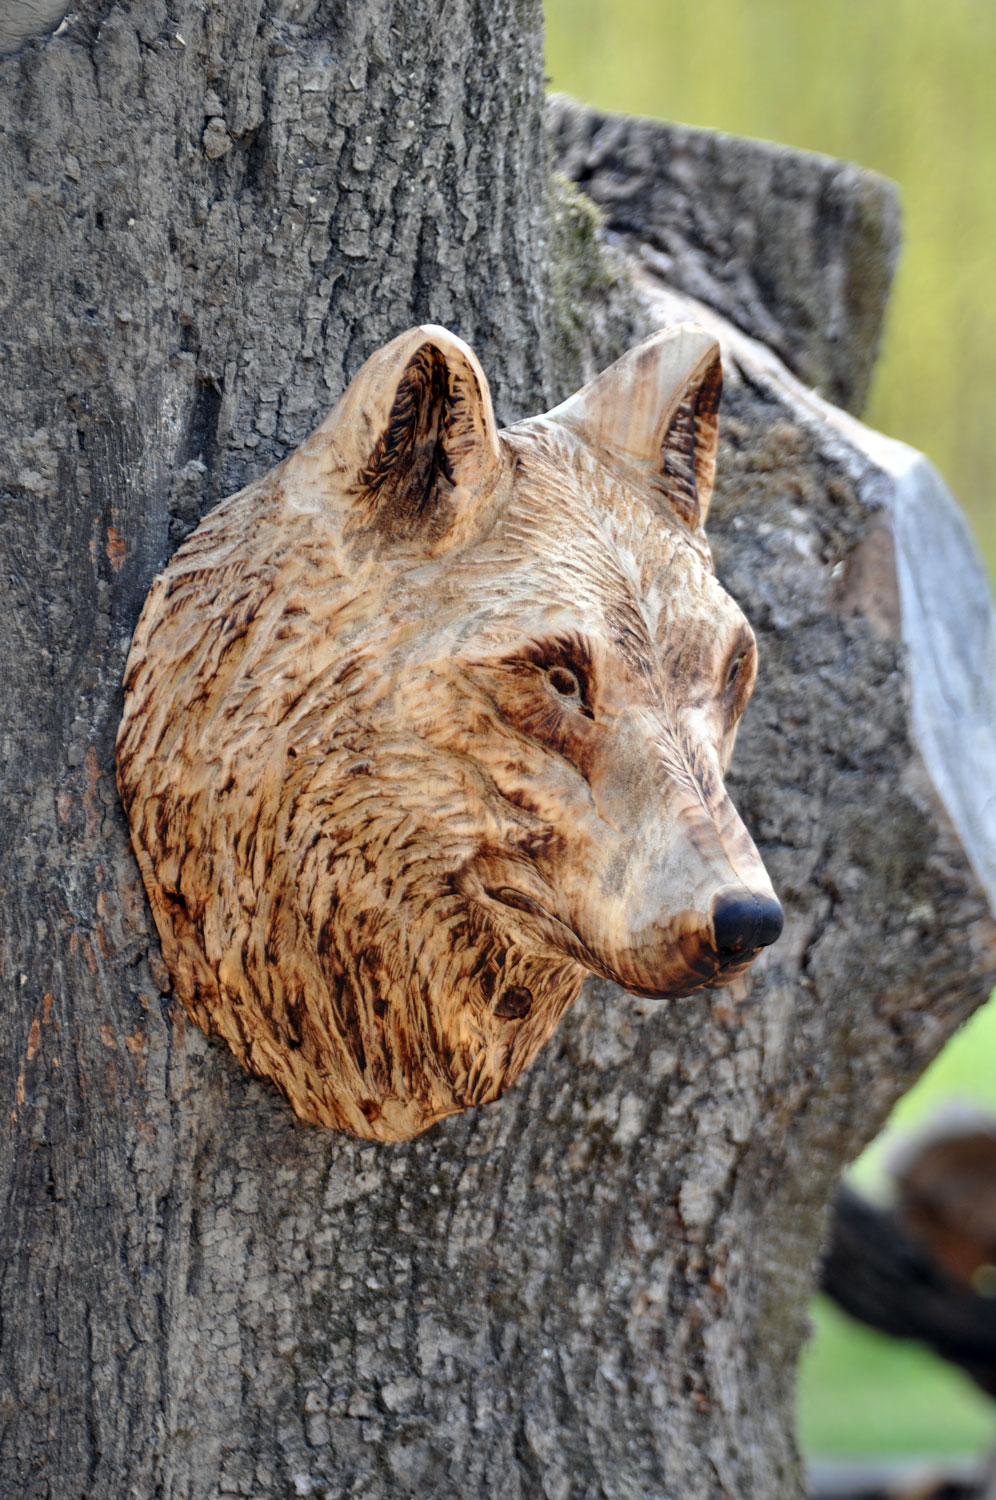 vlk-drevorezba-plastika-vyrezavani-carwing-woodcarving-trofej-hlava-radekzdrazil-20190331-05